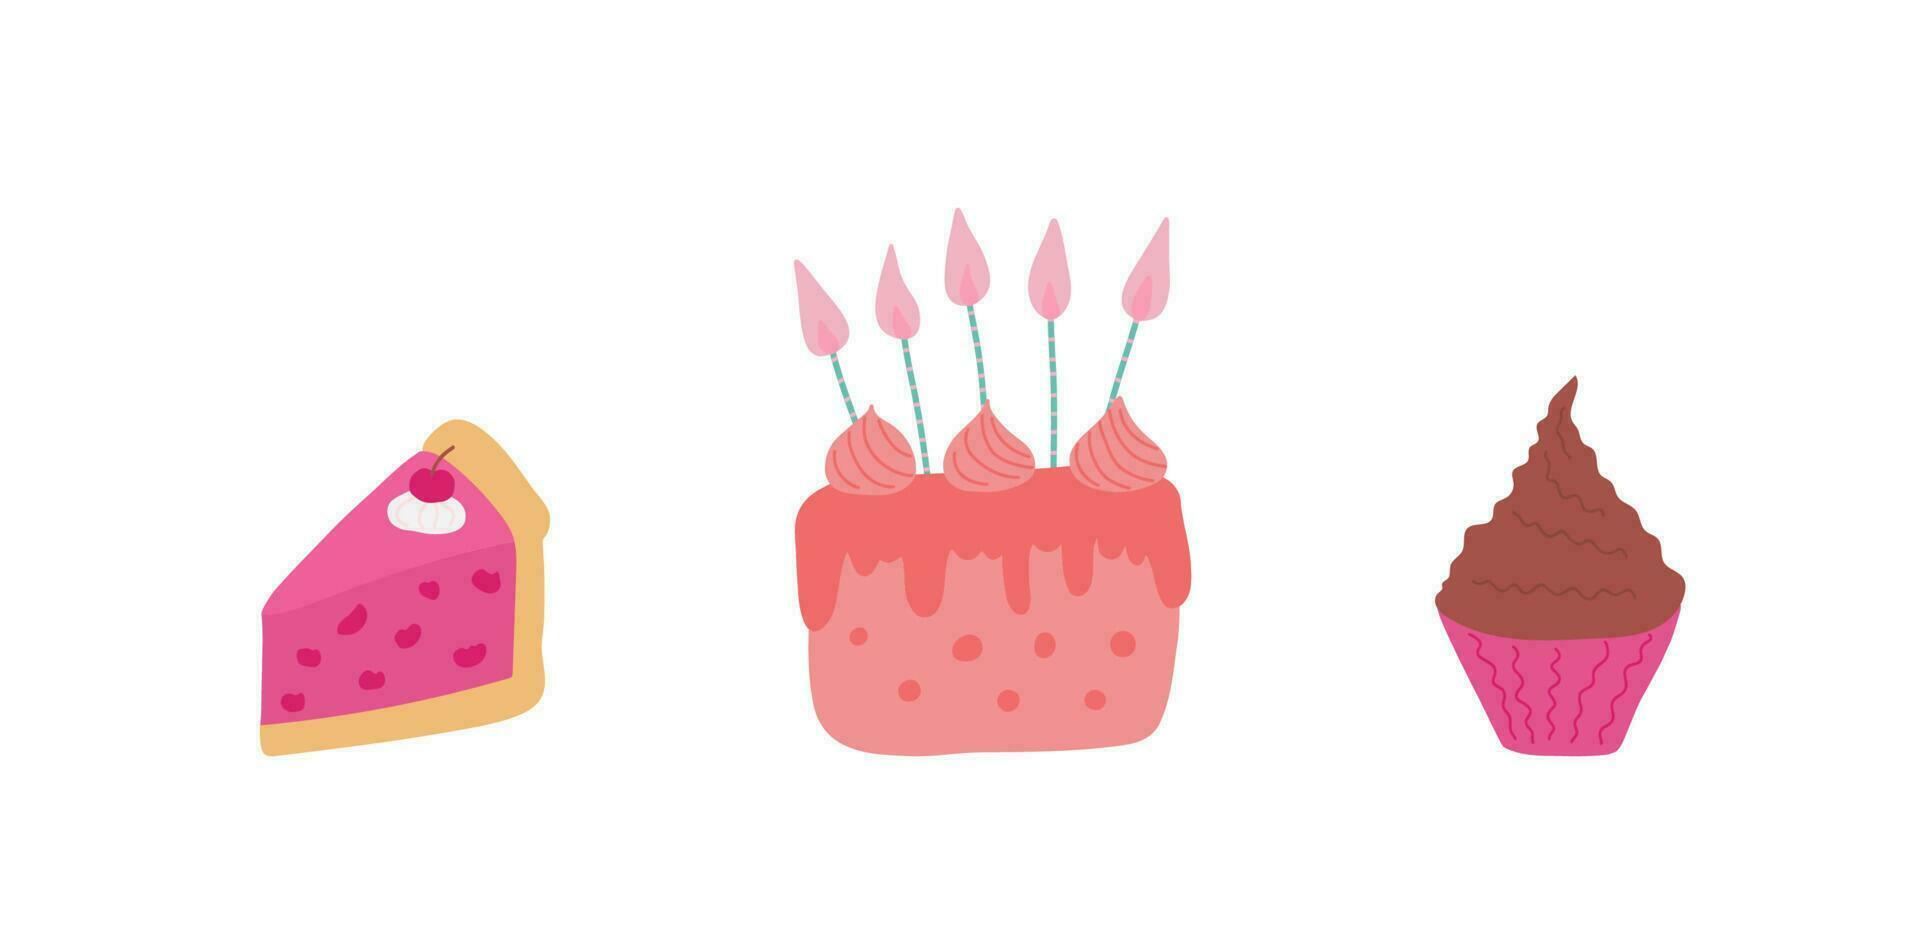 uppsättning av ritad för hand konfekt kaka med ljus, cupcake, en bit av kaka med körsbär på en vit bakgrund. för kort, illustrationer, banderoller, flygblad, inbjudningar. vektor illustration.